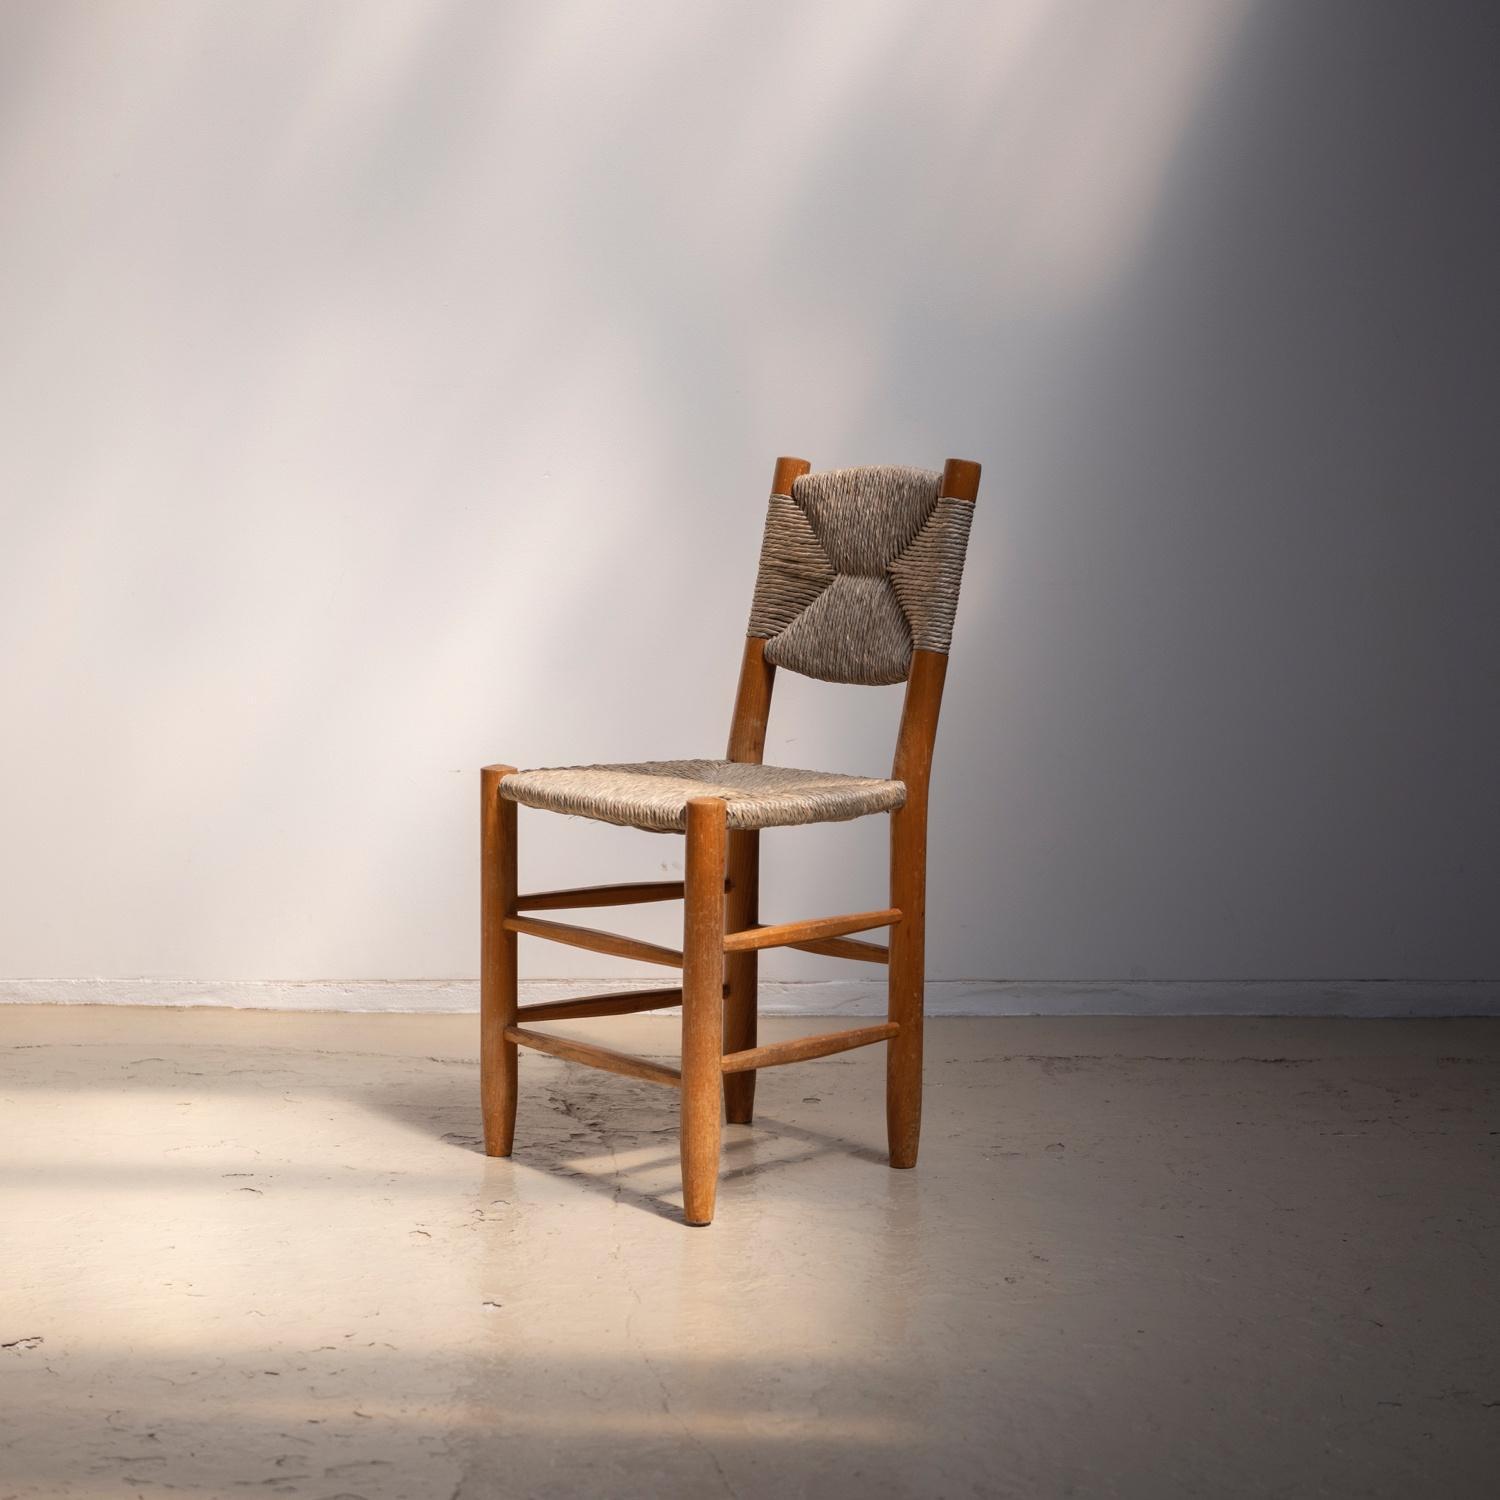 N°19 Bauche Chair - Objet d' art